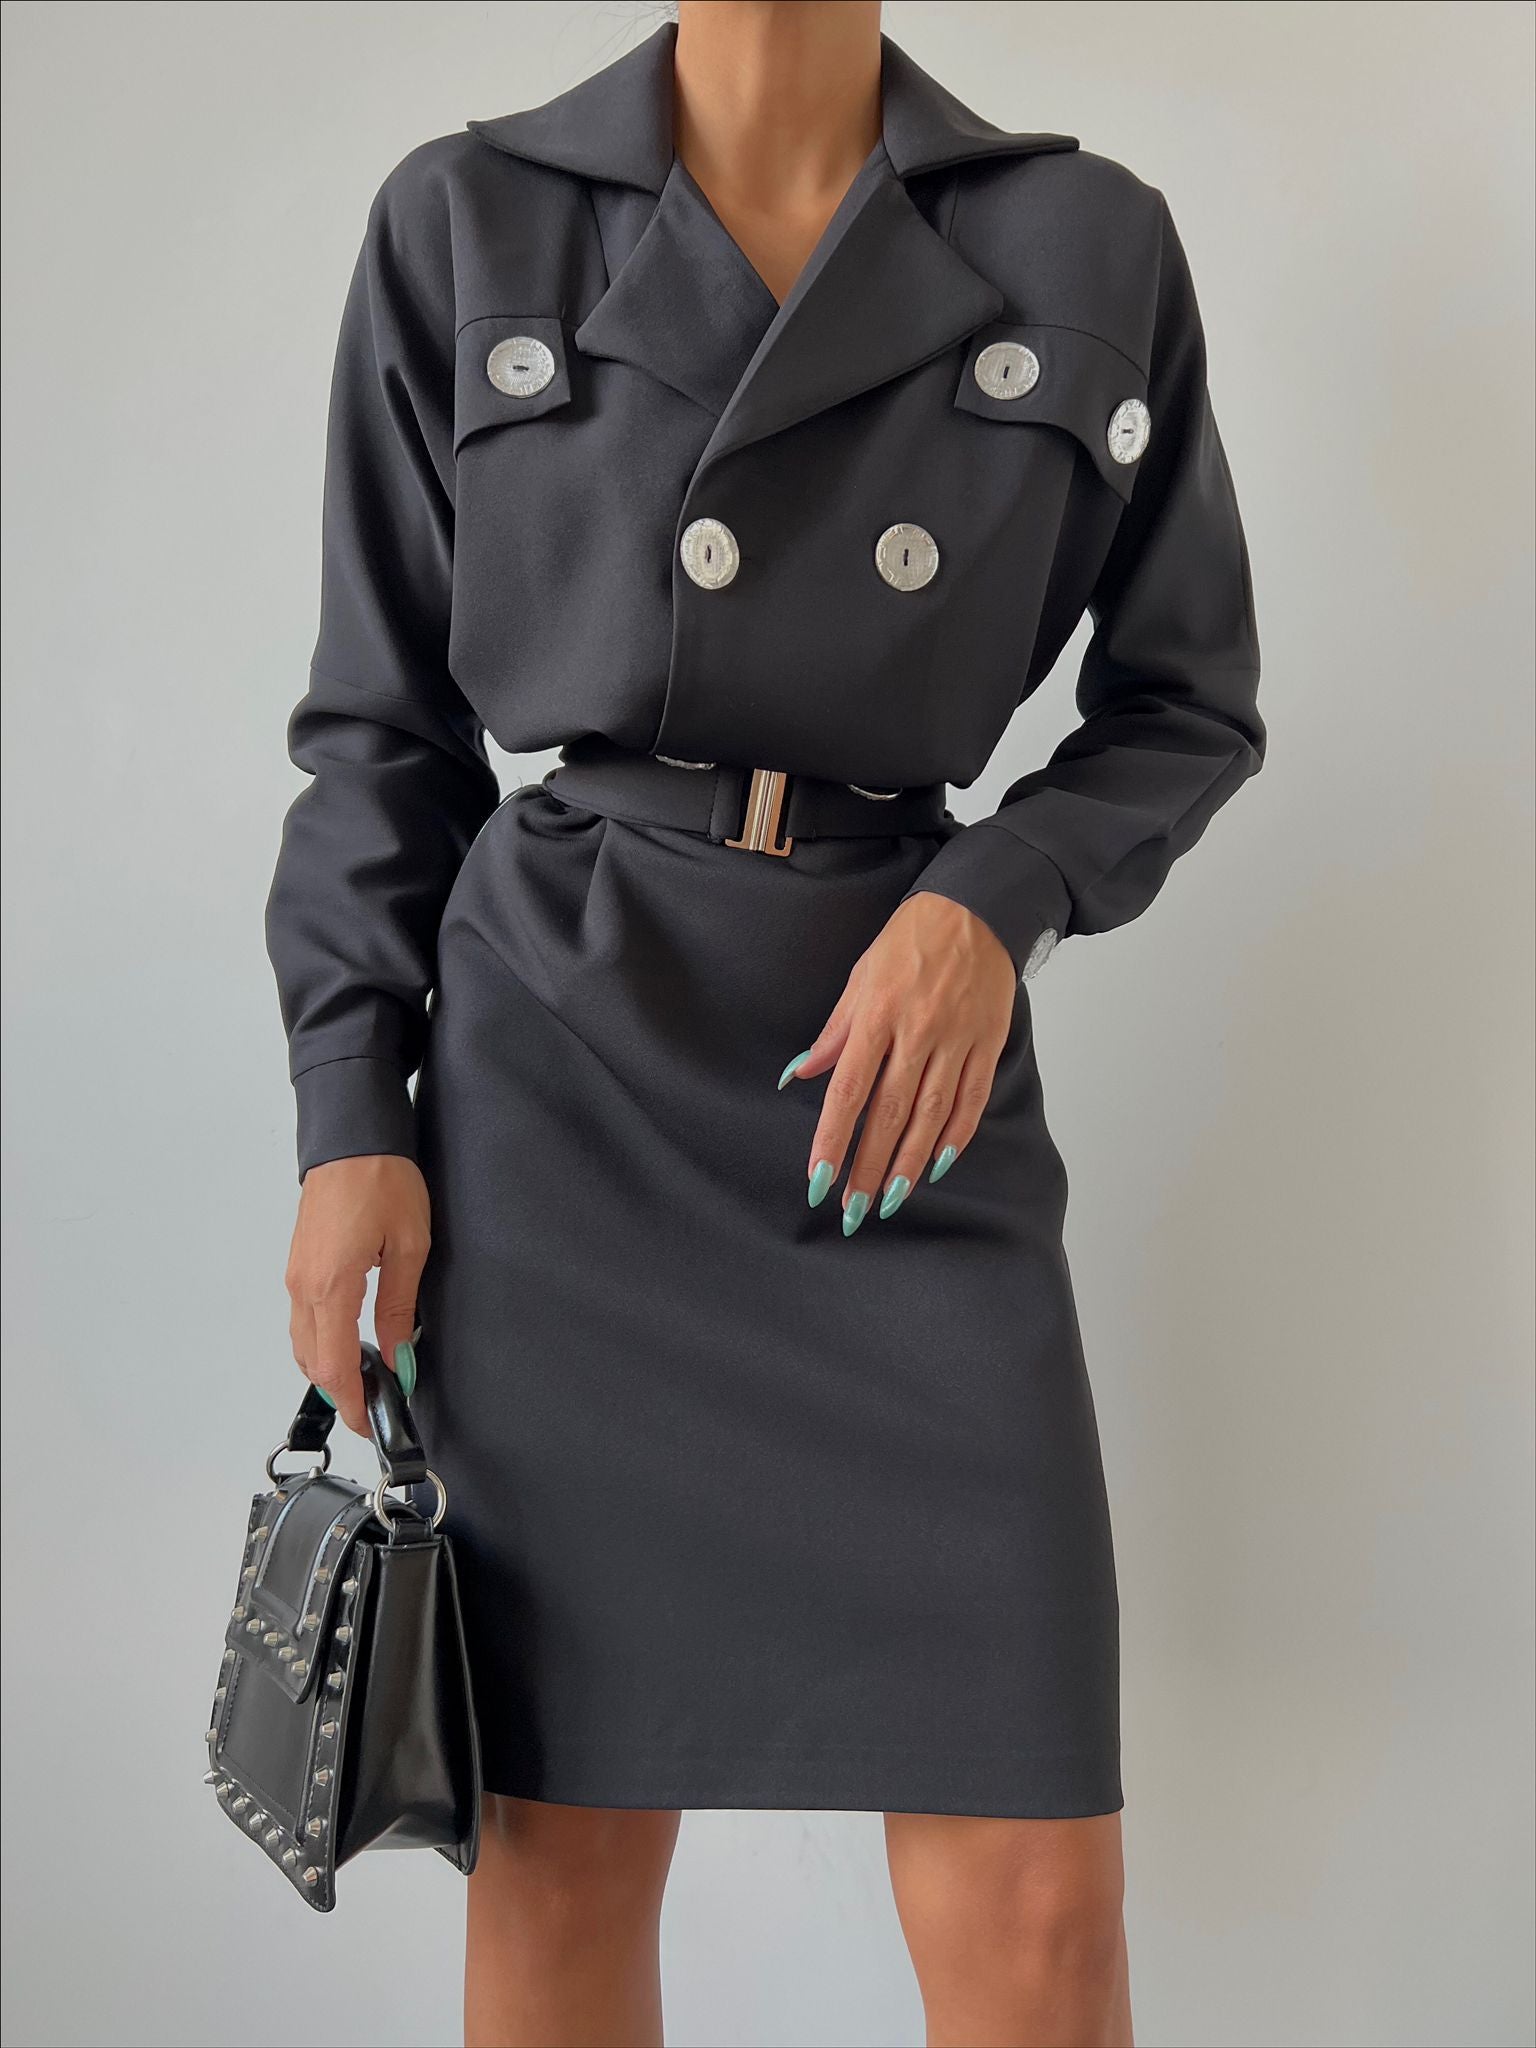 Дамска рокля BENI BLACK  https://bvseductive.com/products/womans-s-dresses-beni-black  елегантна рокля в черен цвят съставена от приятна на допир материя с вталена кройка, подчертаваща силуета страхотен избор за ослепителна визия 100% полиестер...